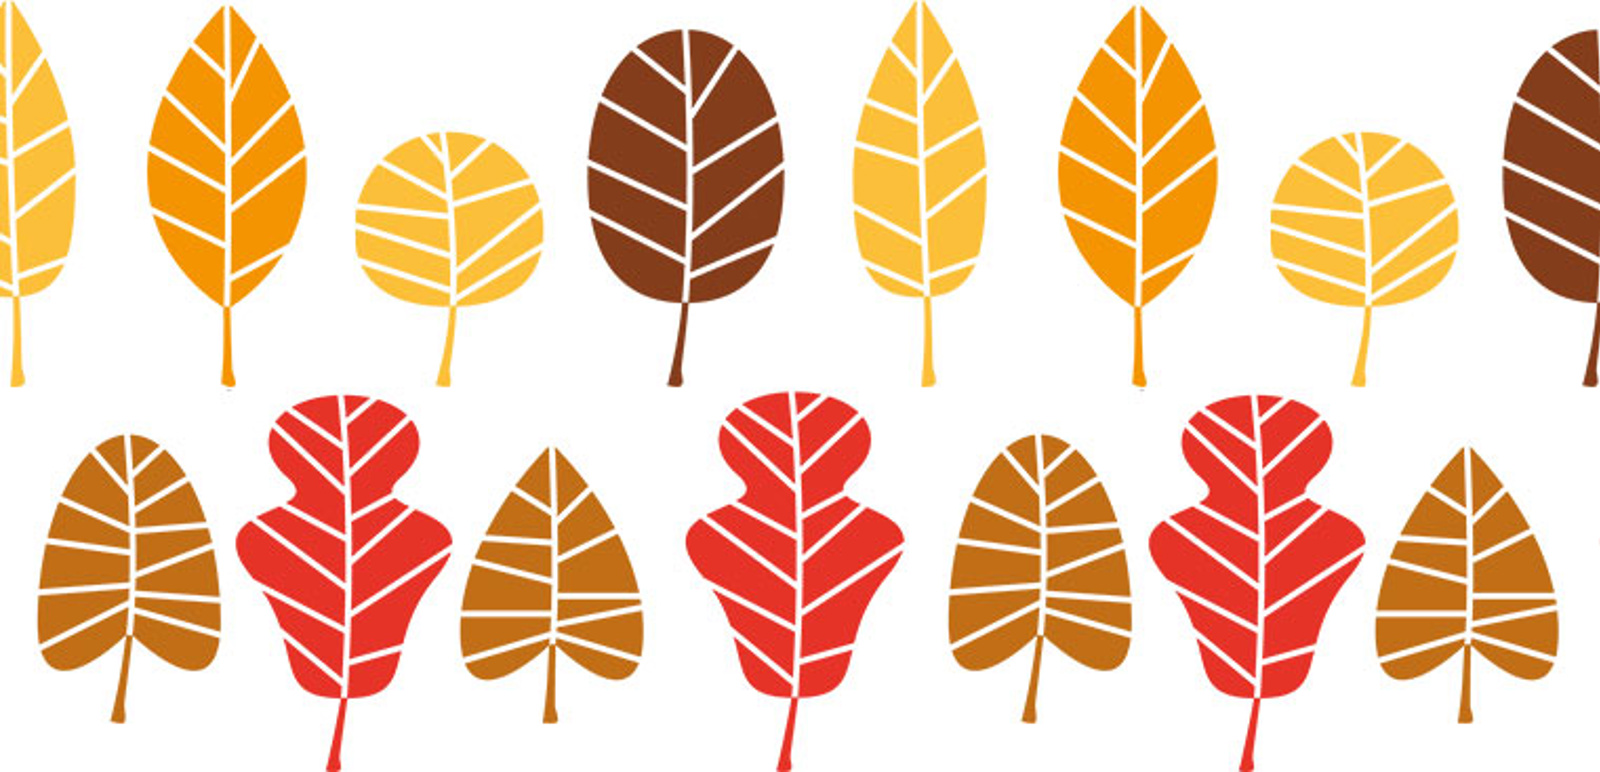 Löv i olika former och färger